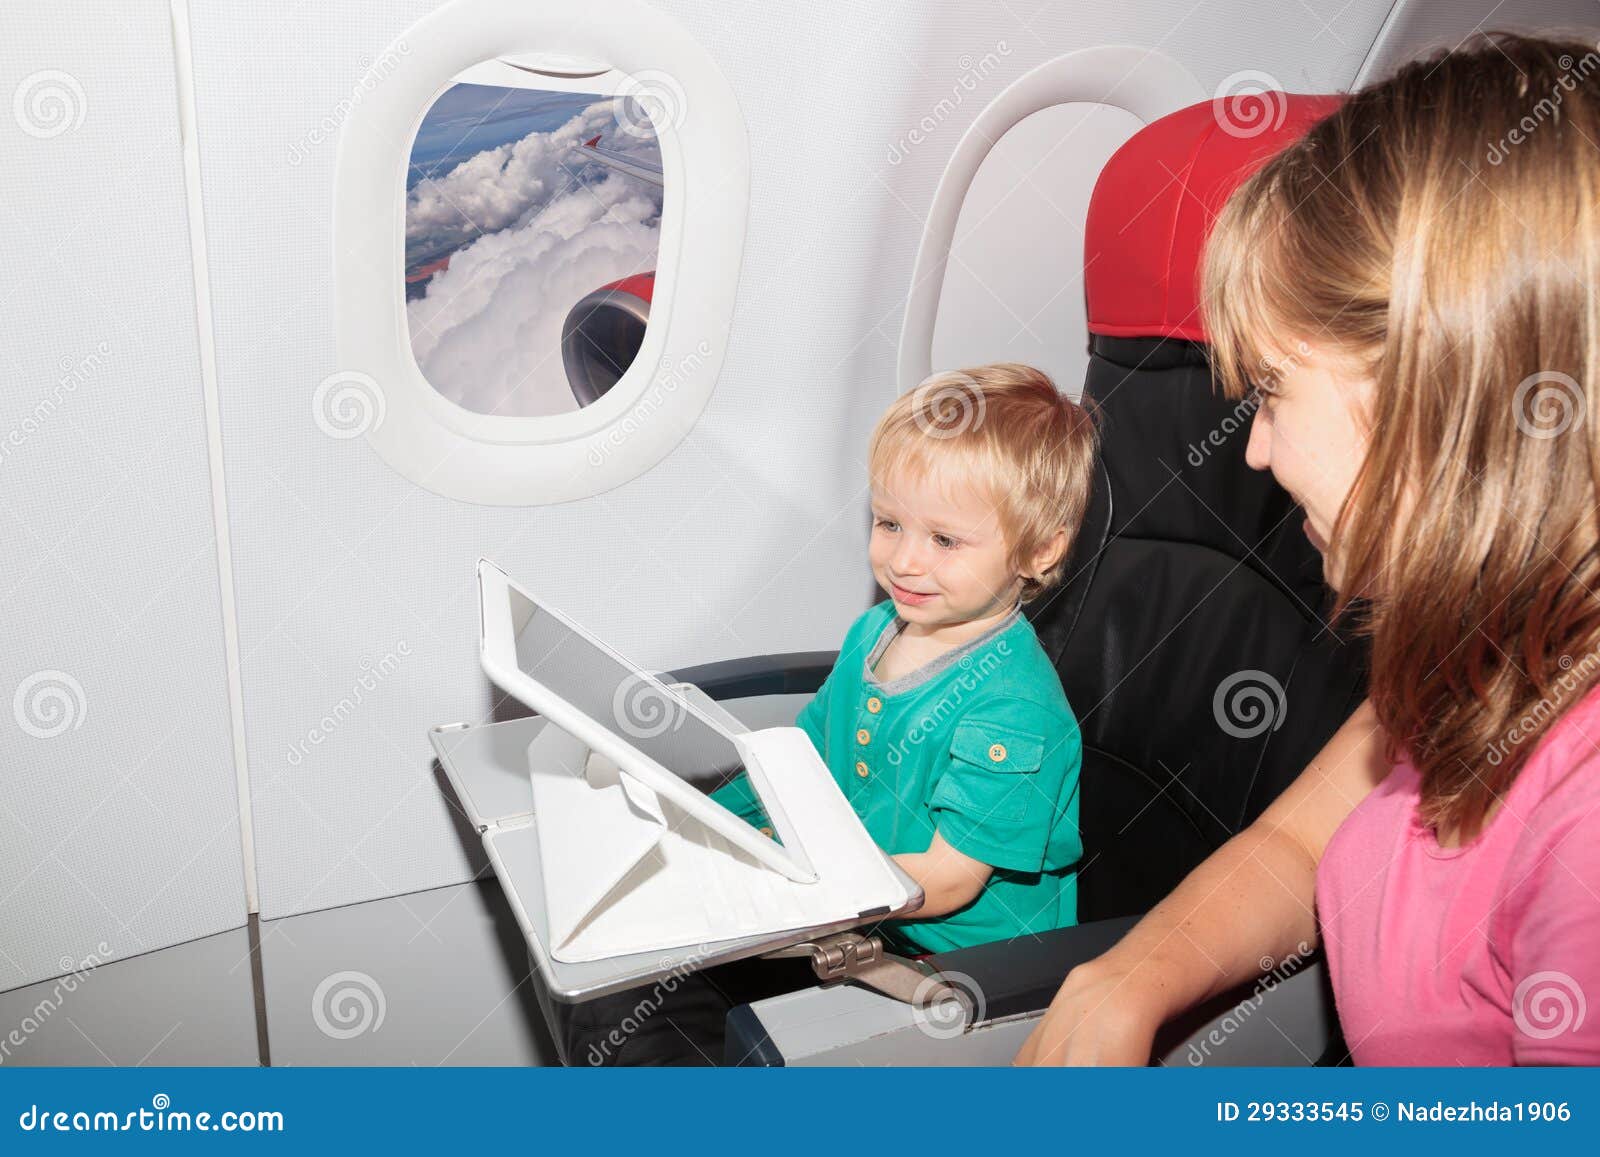 Famille Avec La Tablette Digitale Dans L'avion Image stock - Image